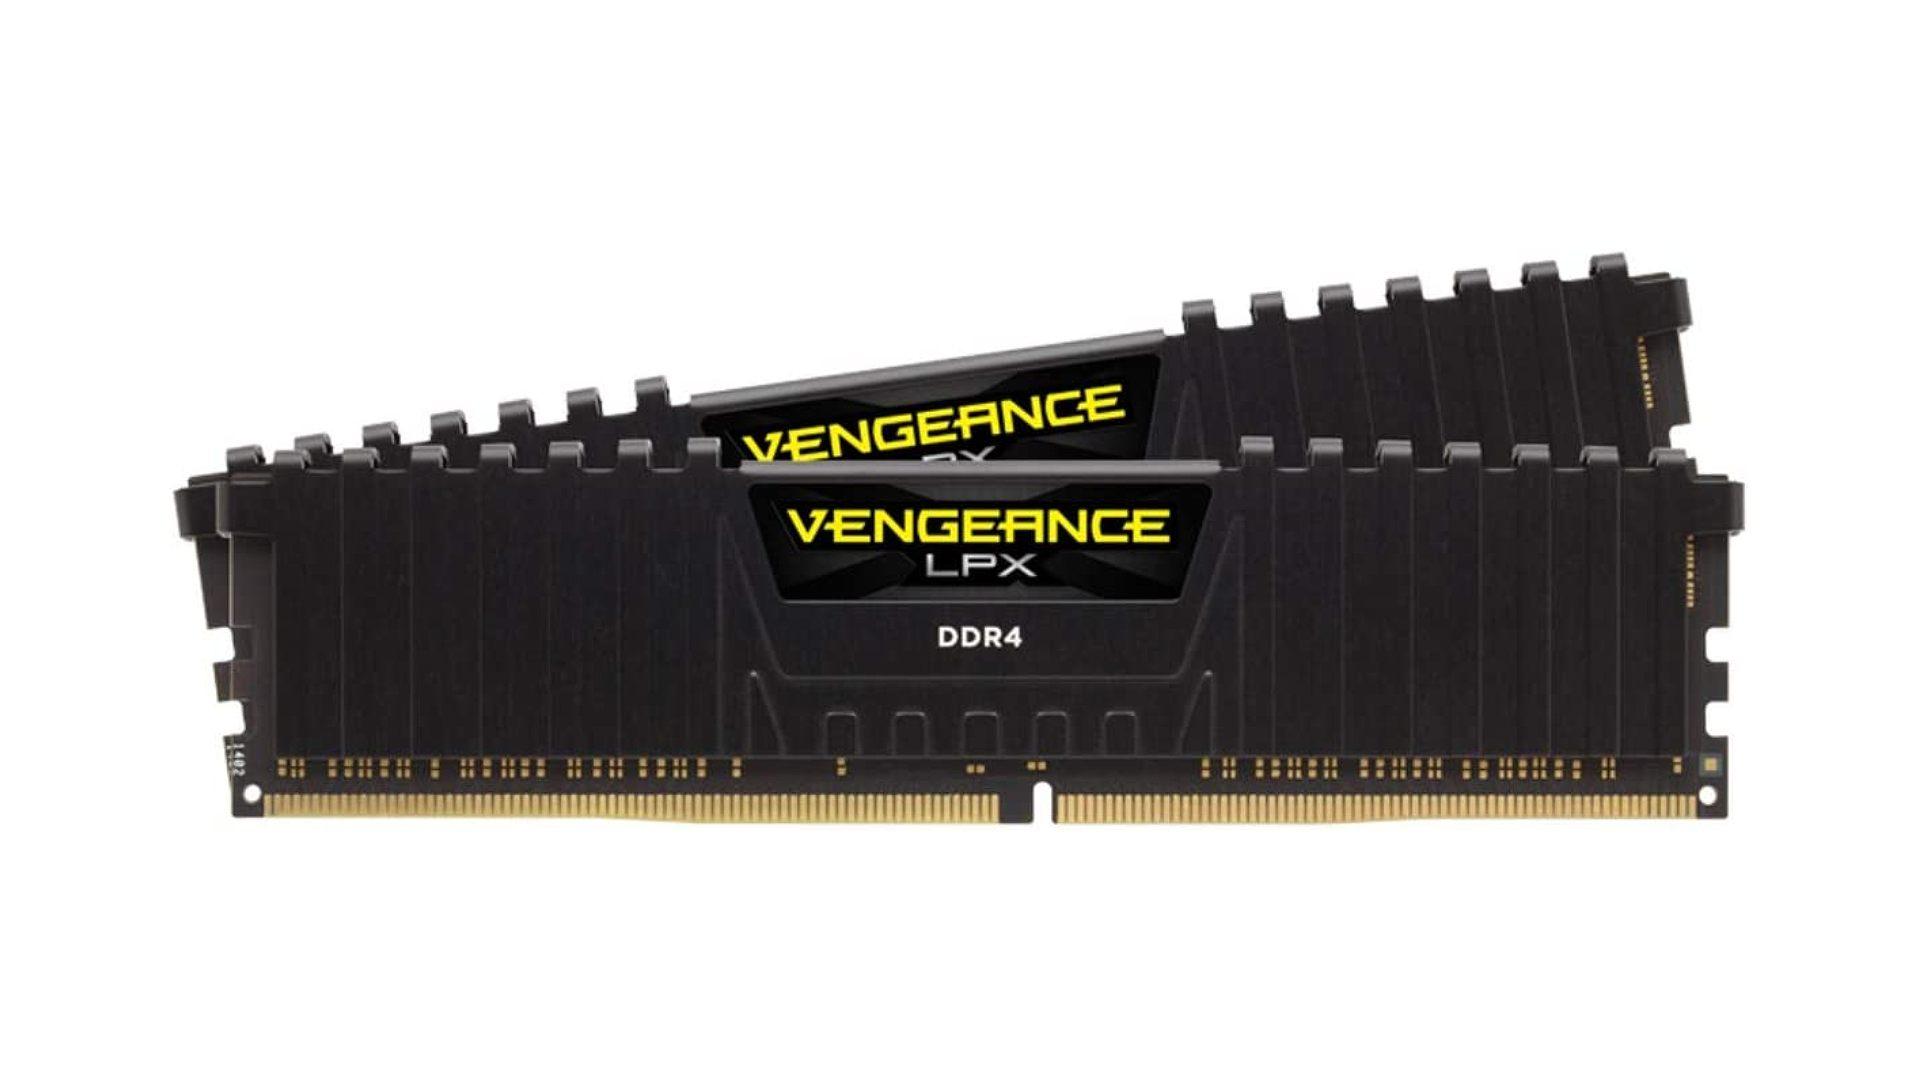 Corsair Vengeance LPX 32GB Gaming RAM Kit on White Background